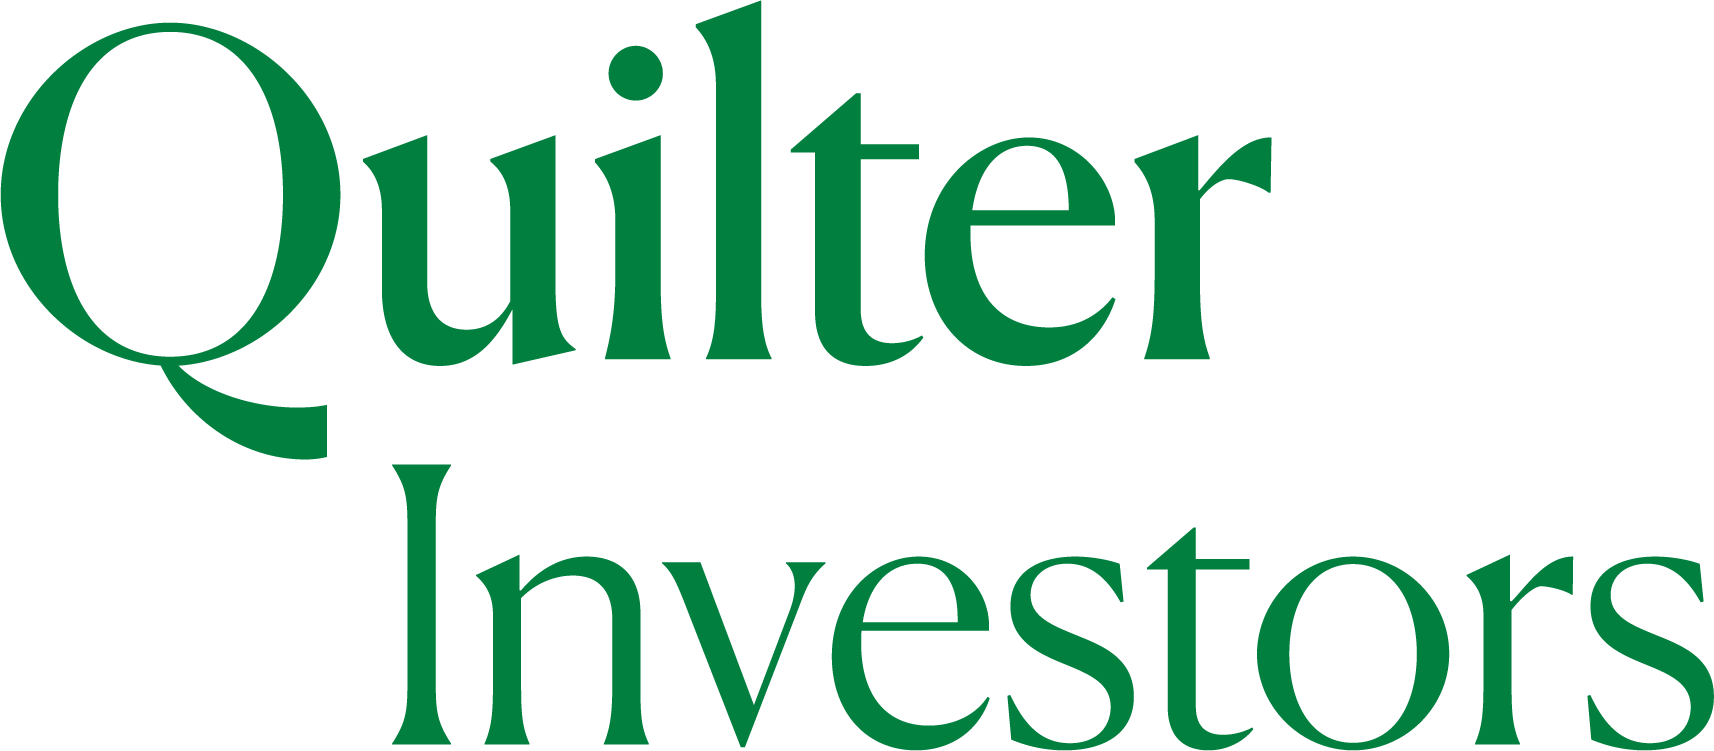 quilter investors